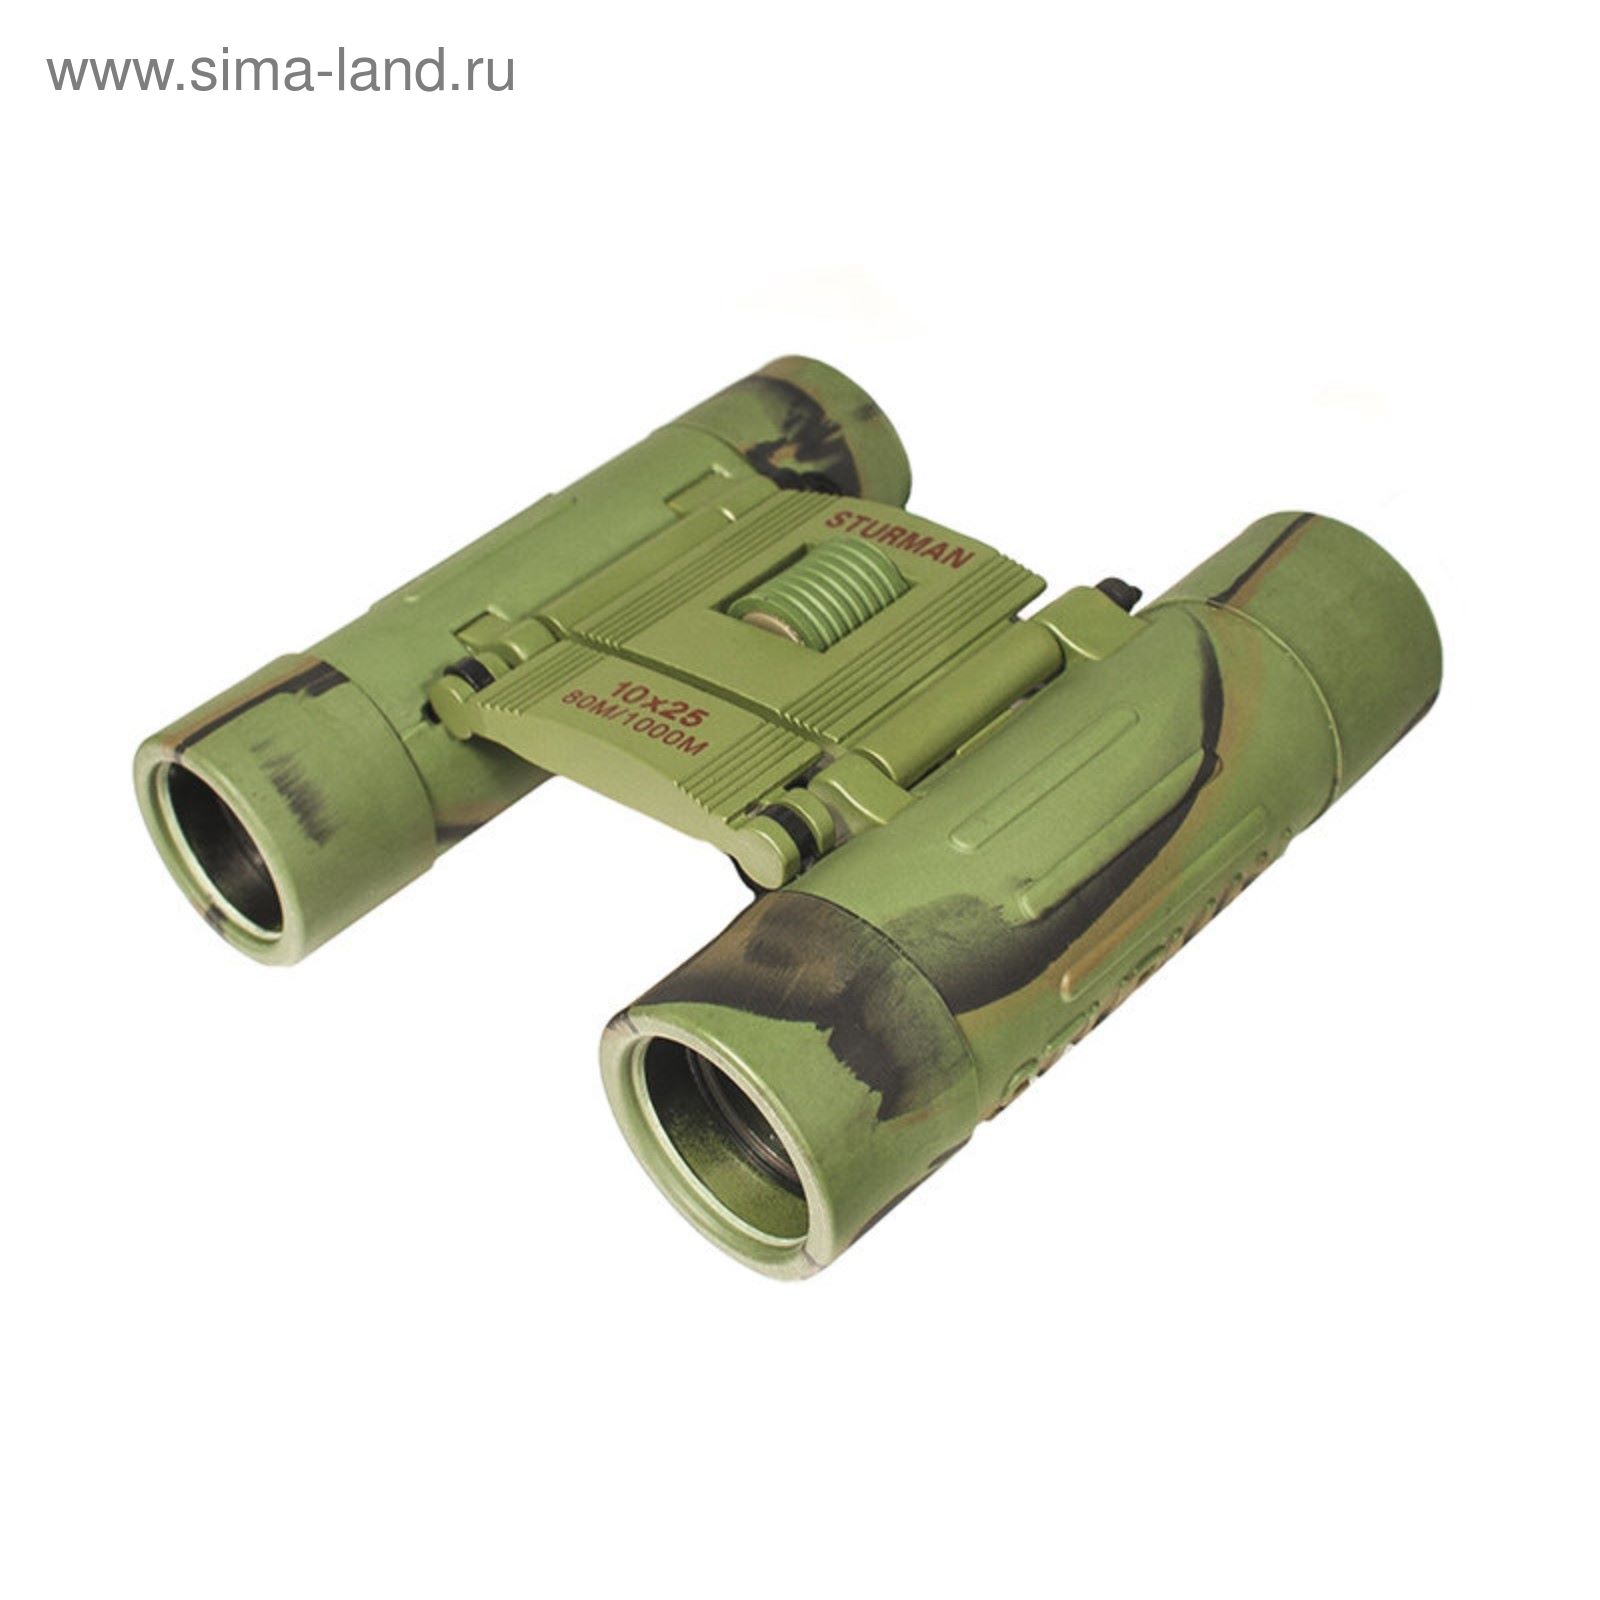 Бинокль Sturman 10x25 зелёный